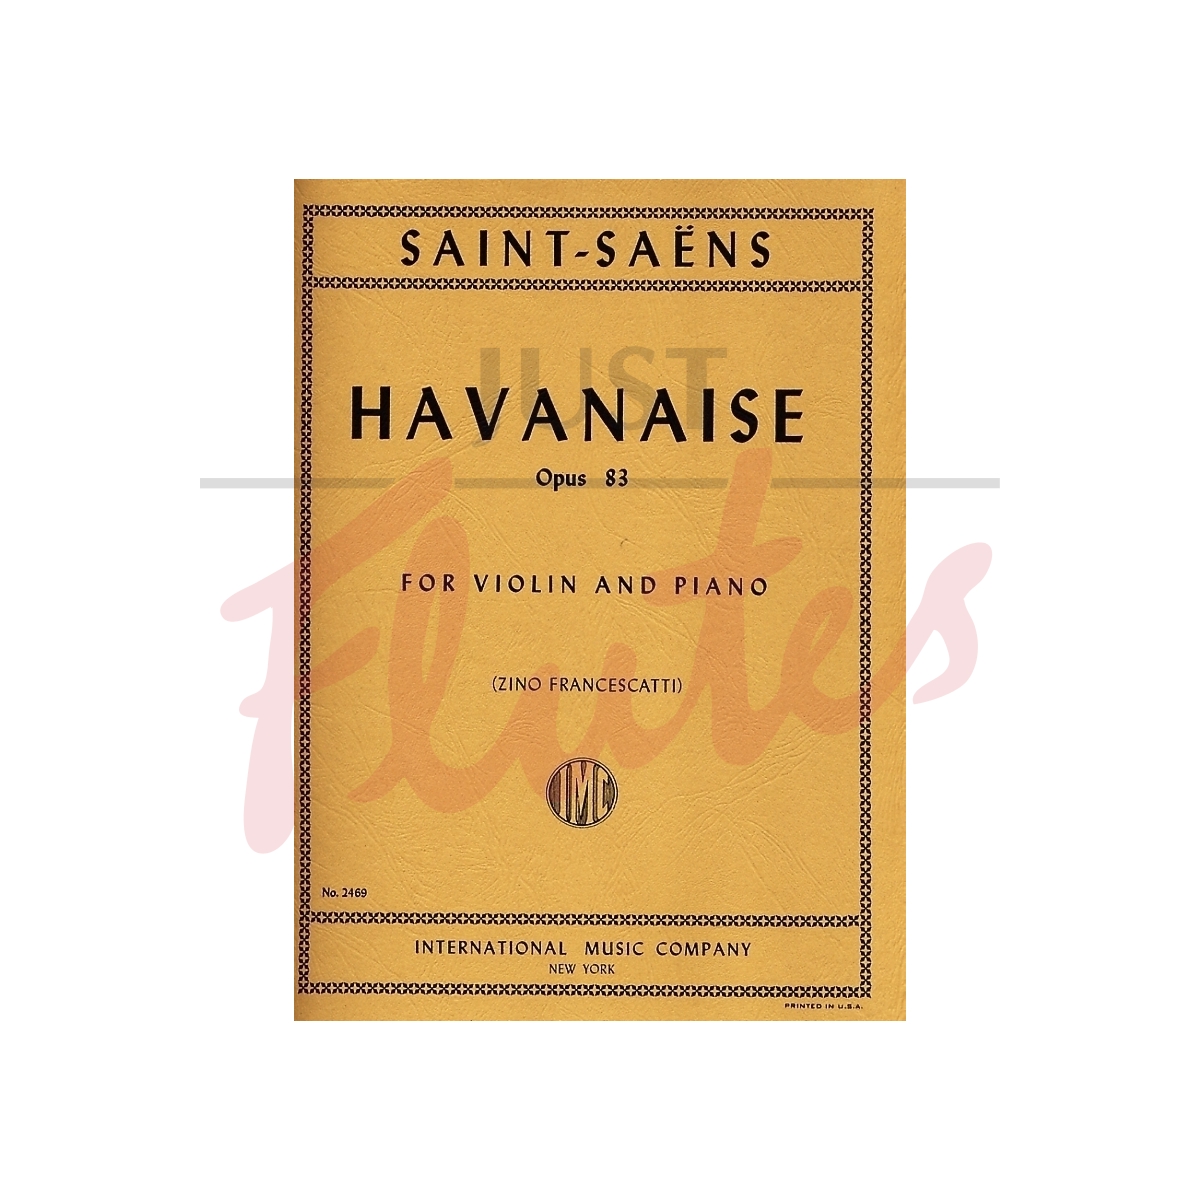 Havanaise